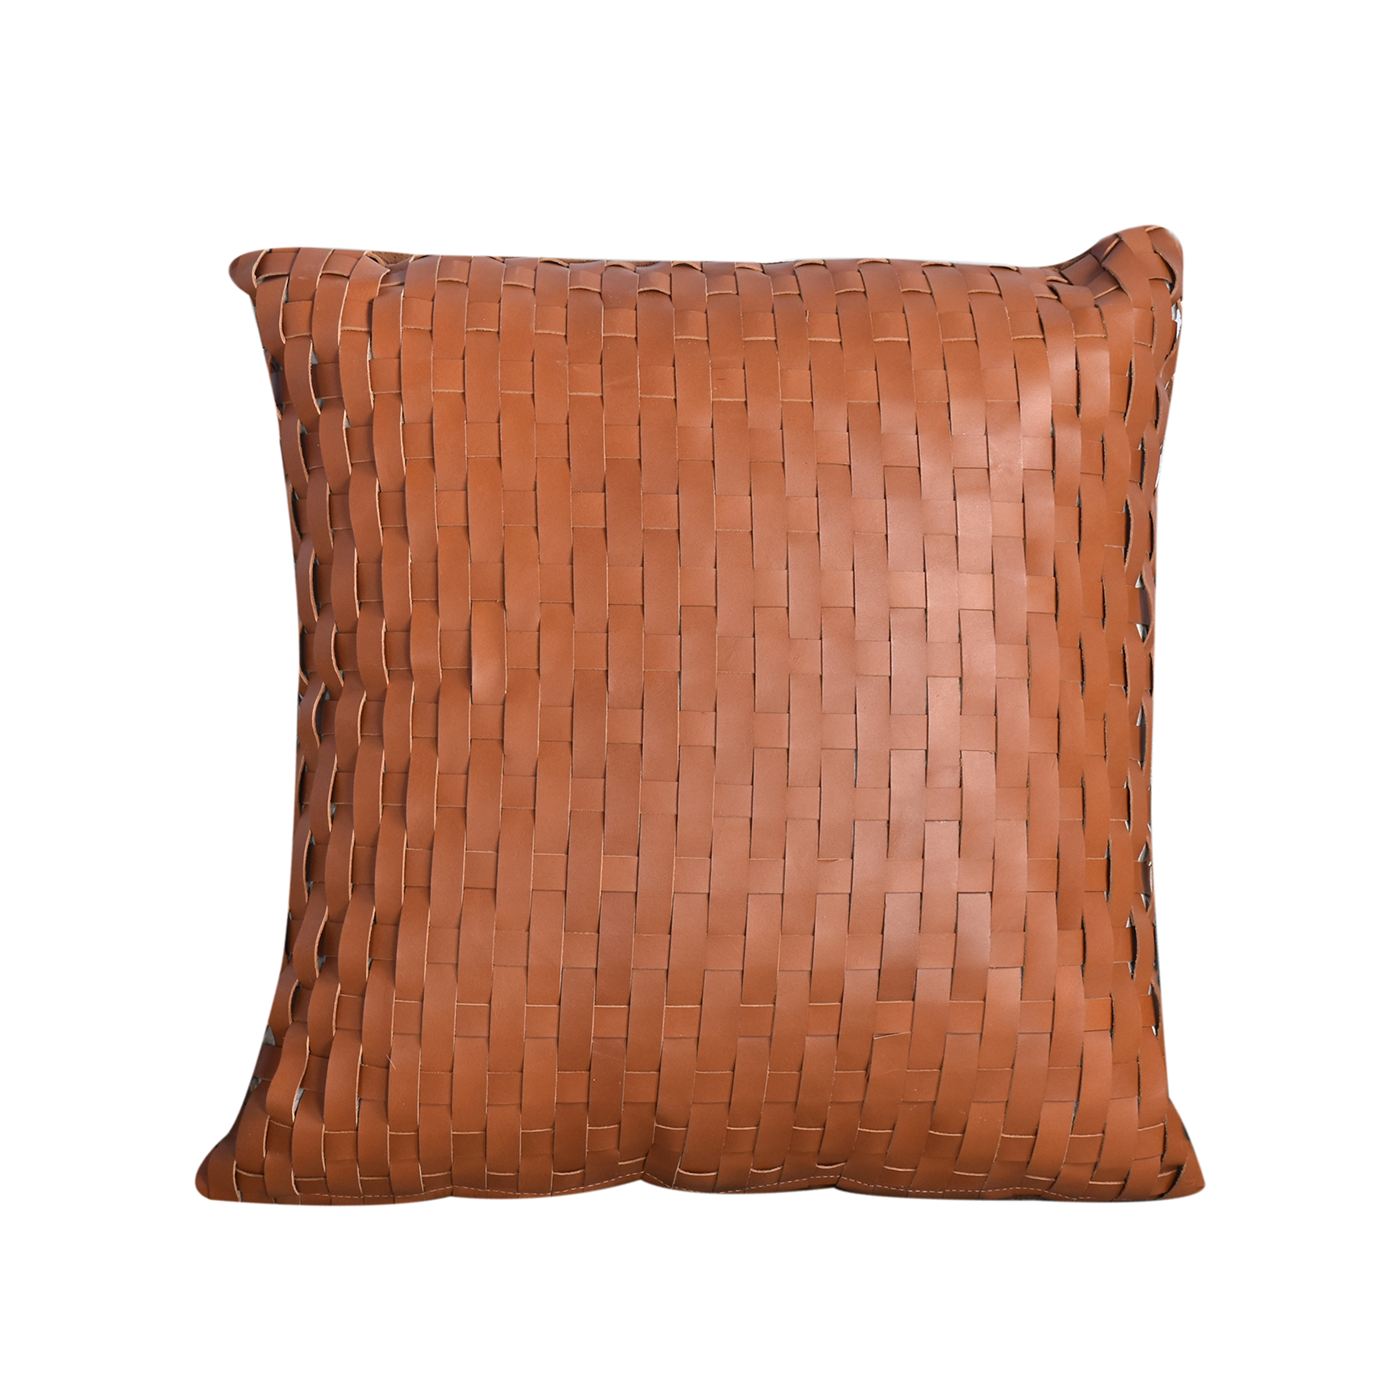 Chiba Cushion, Leather, Tan, Hm Stitching, Flat Weave